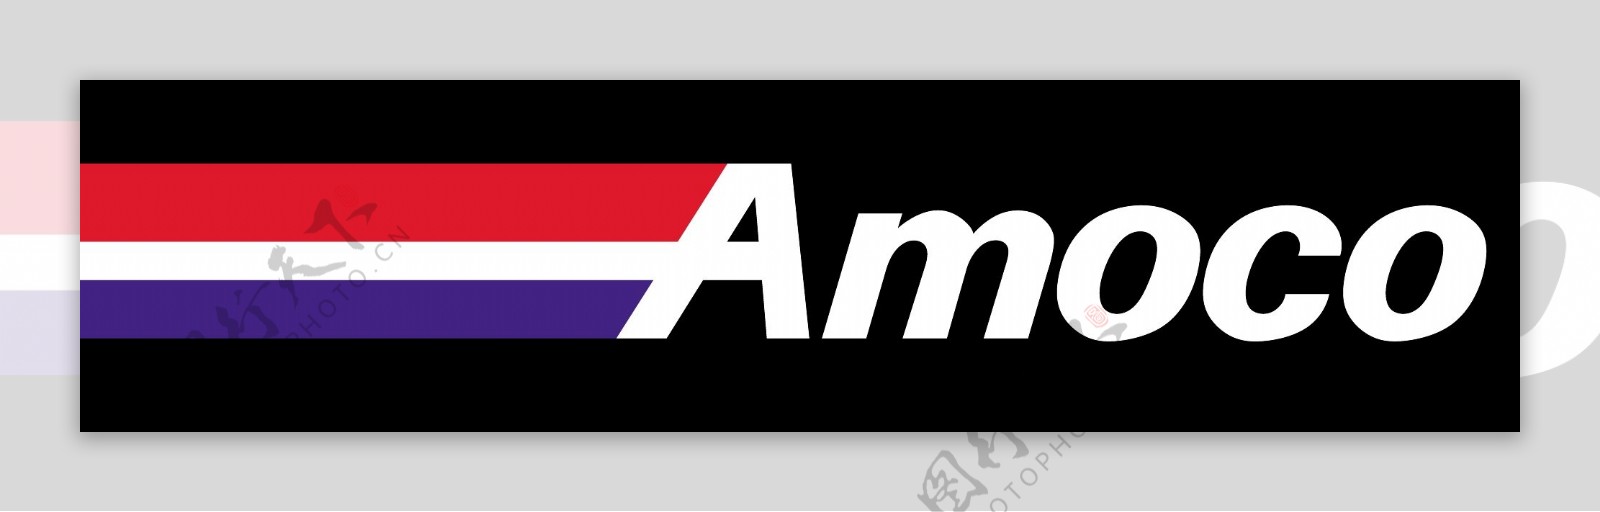 阿莫科logo2